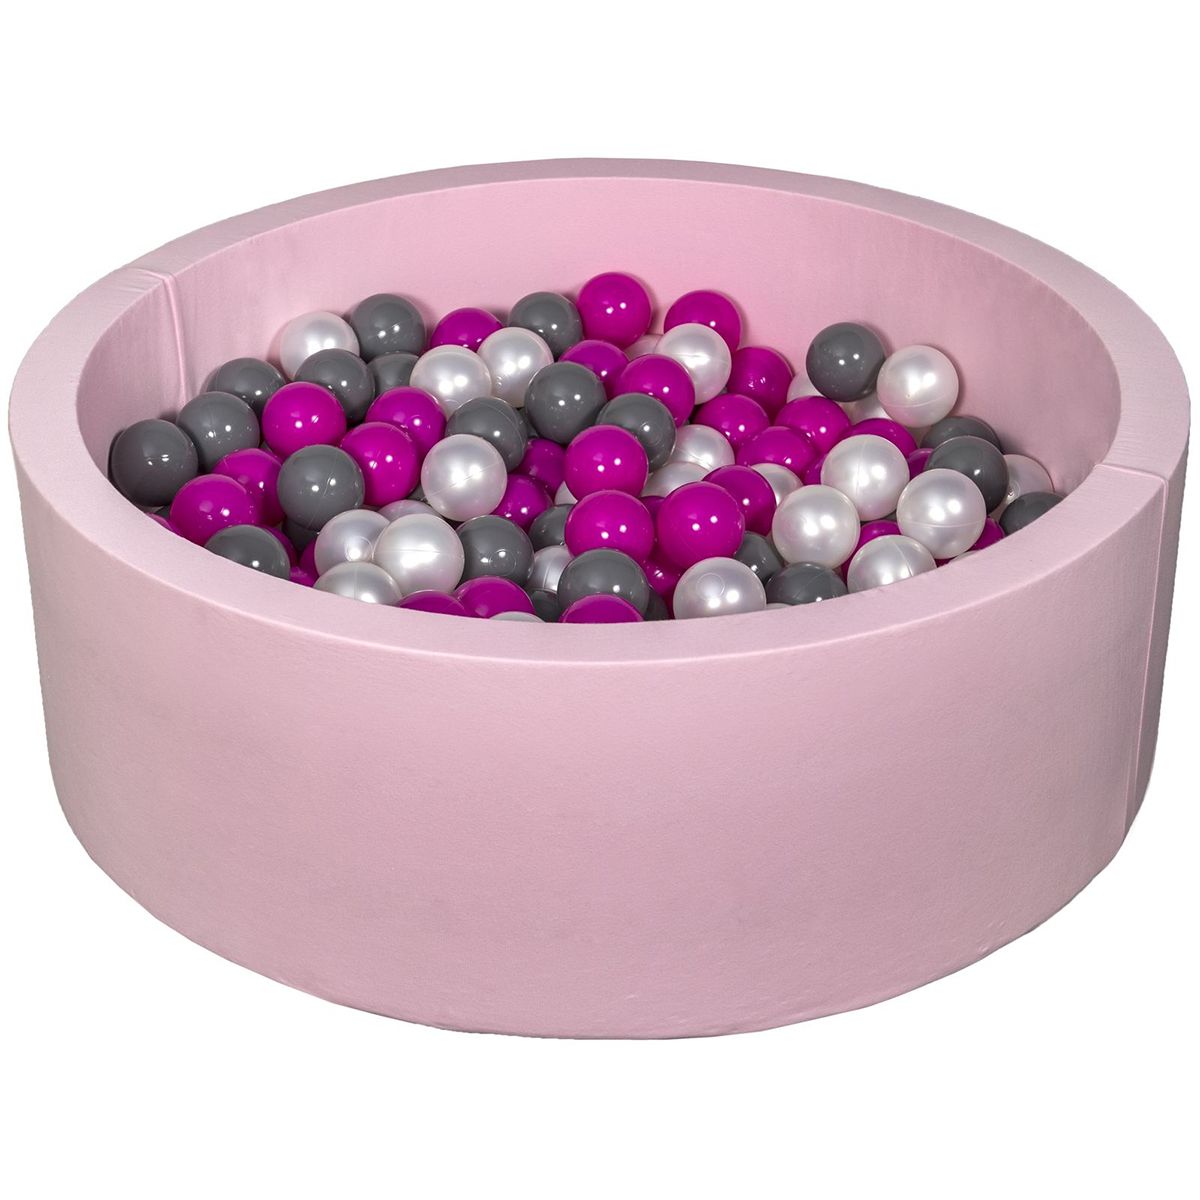  Piscine à balles Aire de jeu + 200 balles rose perle, rose, gris